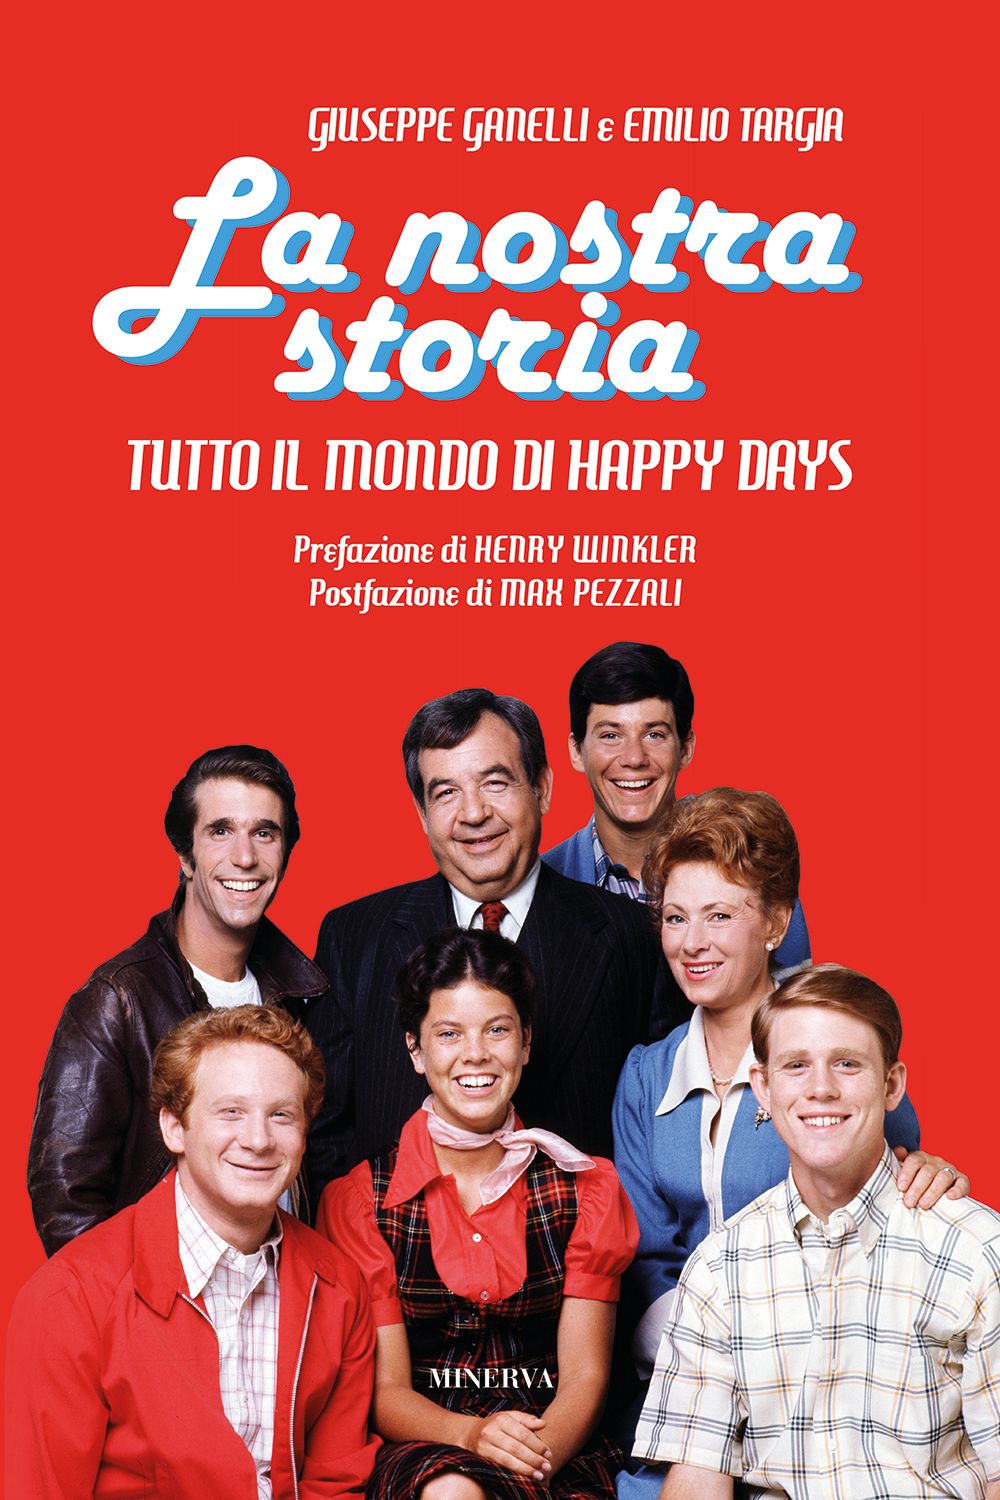 Il primo libro al mondo su una delle sit-com più amate “HAPPY DAYS” di Giuseppe Ganelli e Emilio Targia